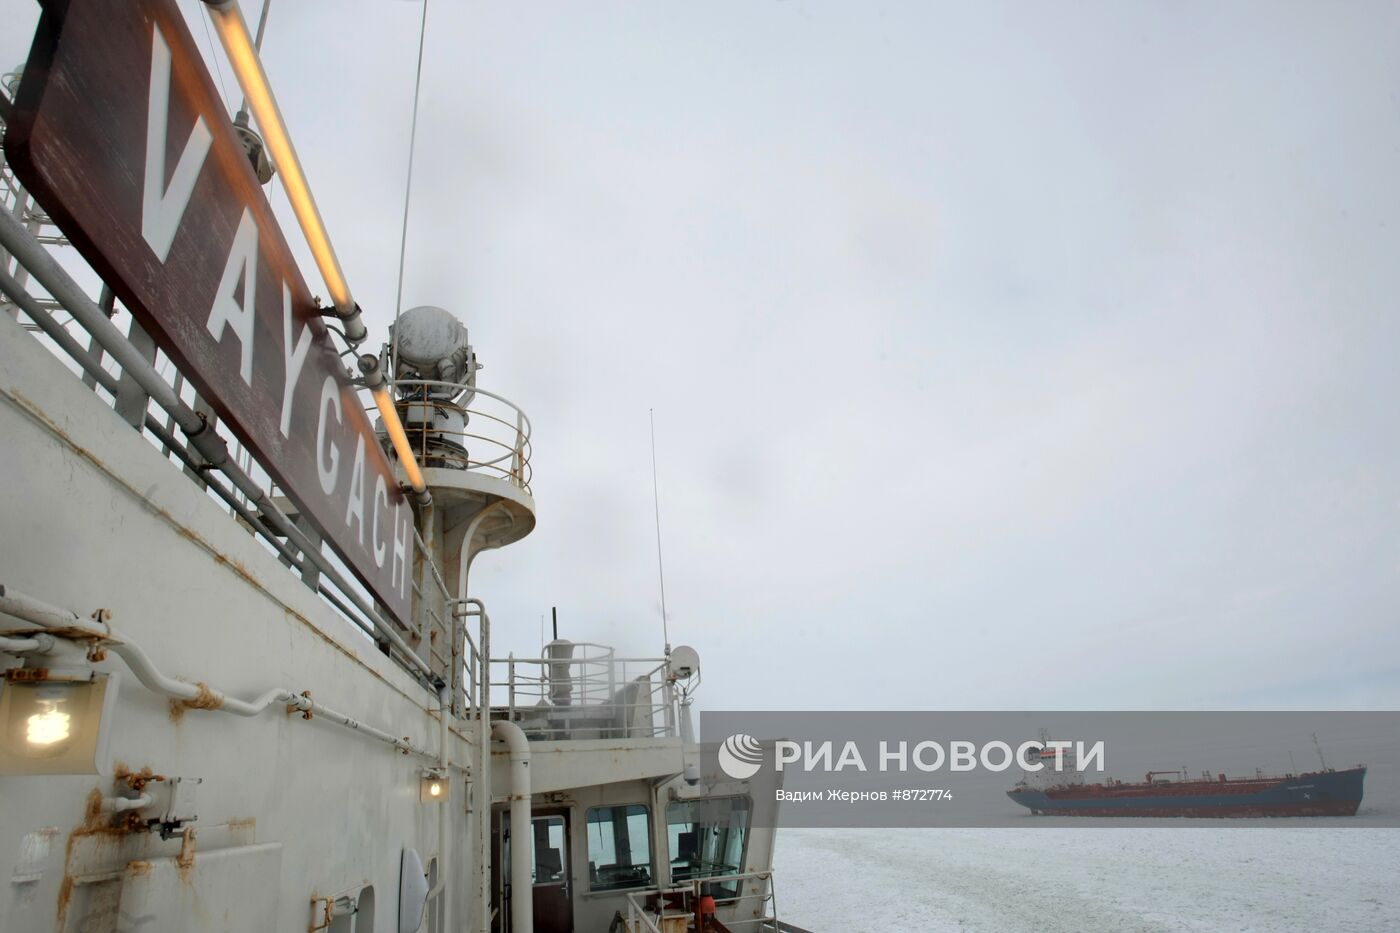 Атомный ледокол "Вайгач" проводит караван судов в Финском заливе